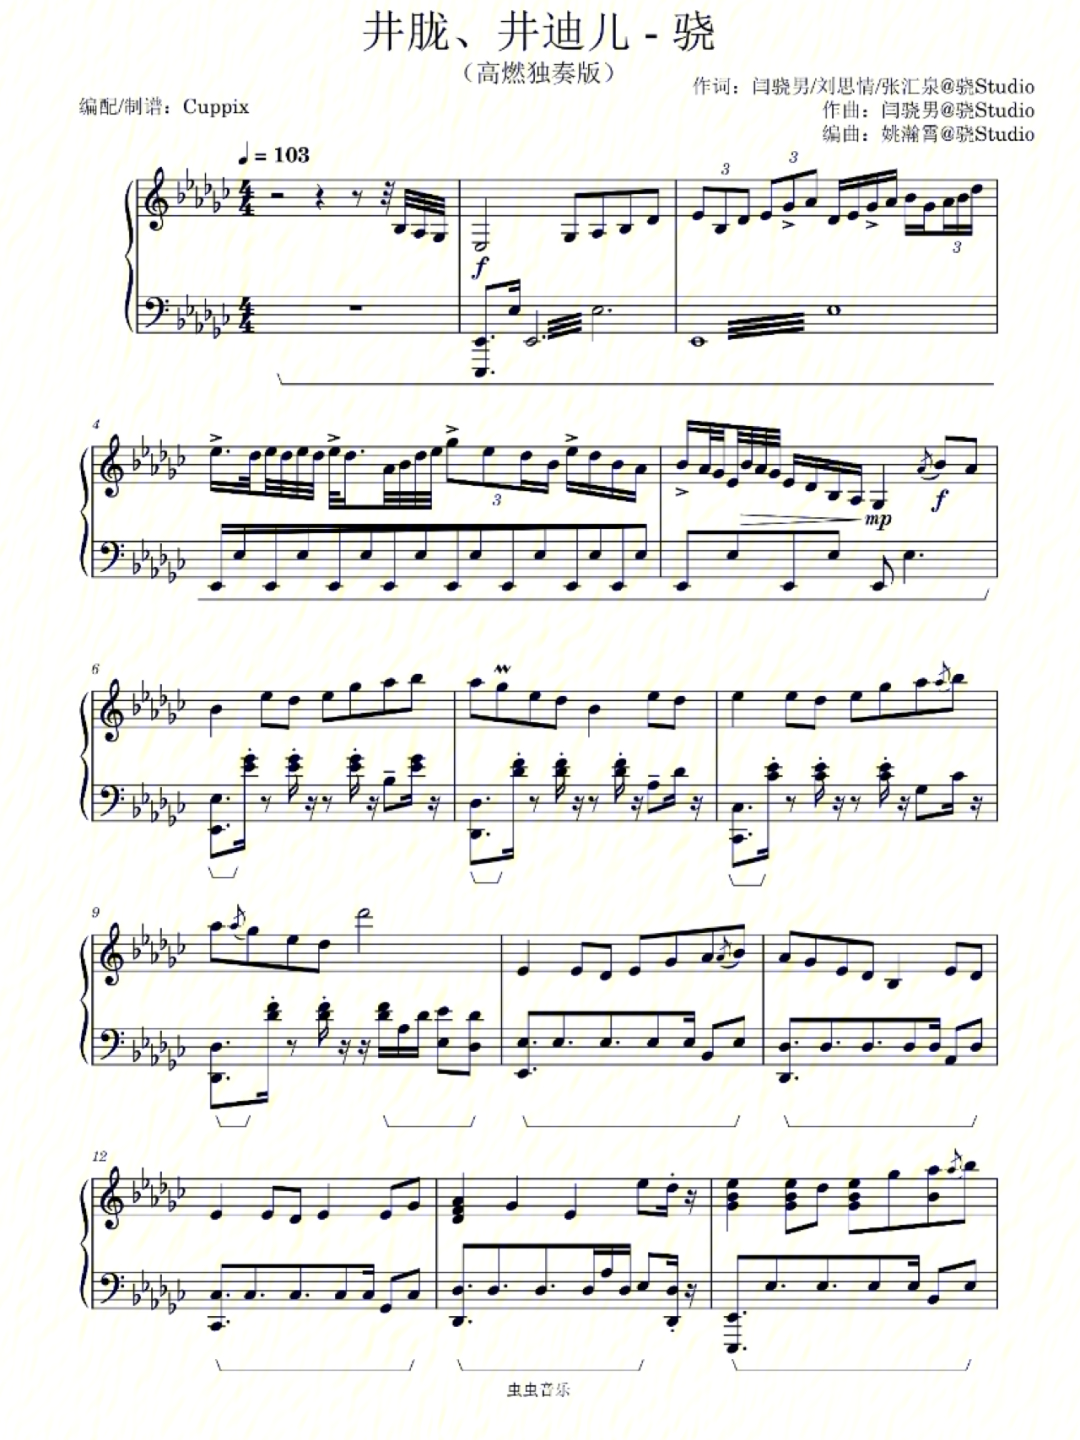 骁的钢琴曲谱完整版图片